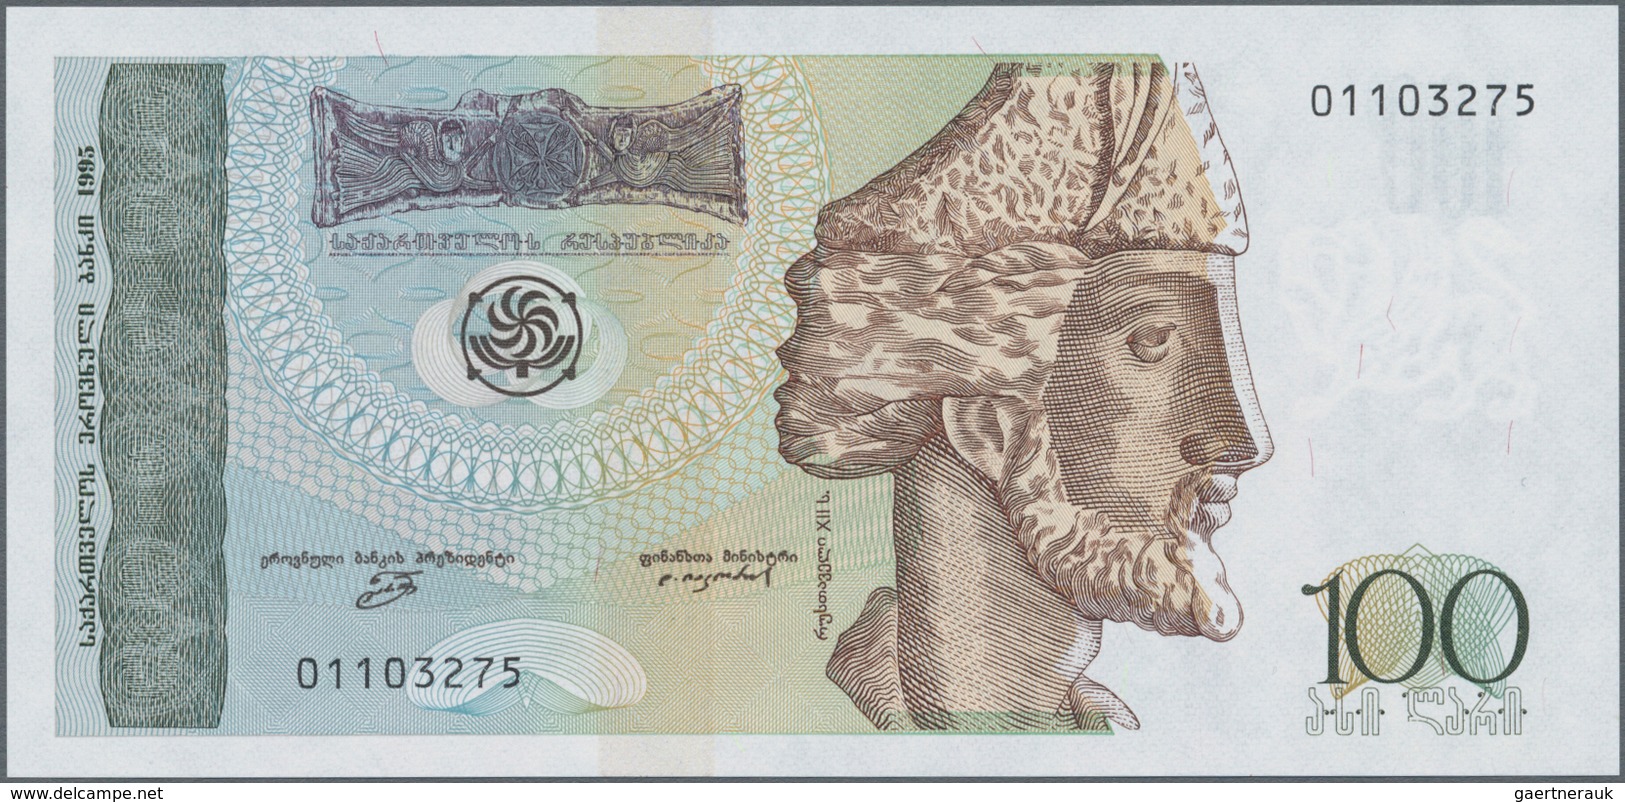 Georgia / Georgien: Set With 3 Banknotes 50 And 100 Lari 1995 And 100 Lari 2016 P.80, All In Perfect - Georgien